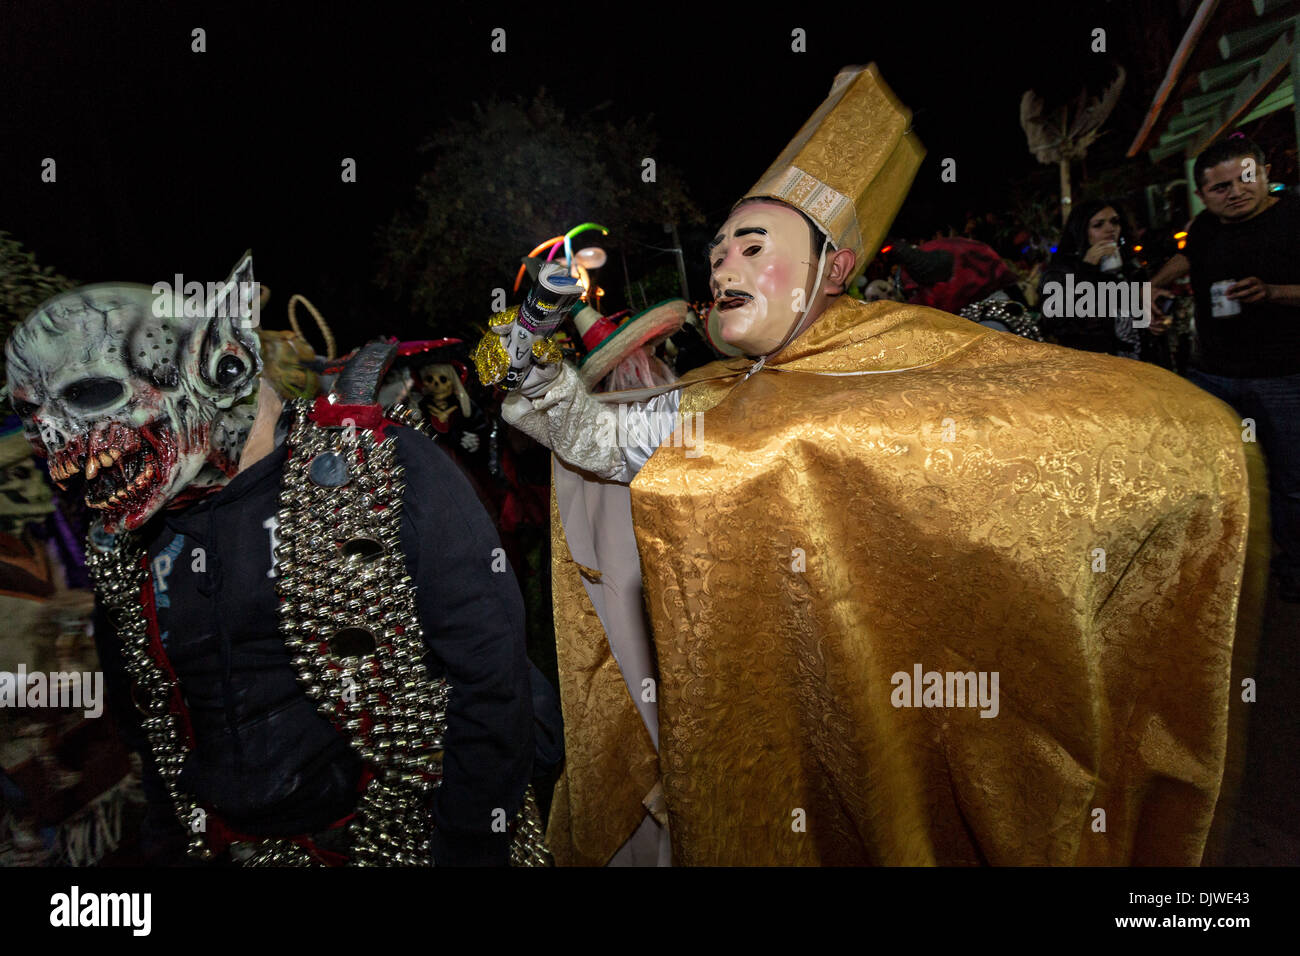 Costume di festeggianti sfilano per le strade per celebrare il Giorno dei Morti Festival noto in spagnolo come Día de Muertos il 1 novembre 2013 a San Agustin Etla, Oaxaca, Messico. Foto Stock